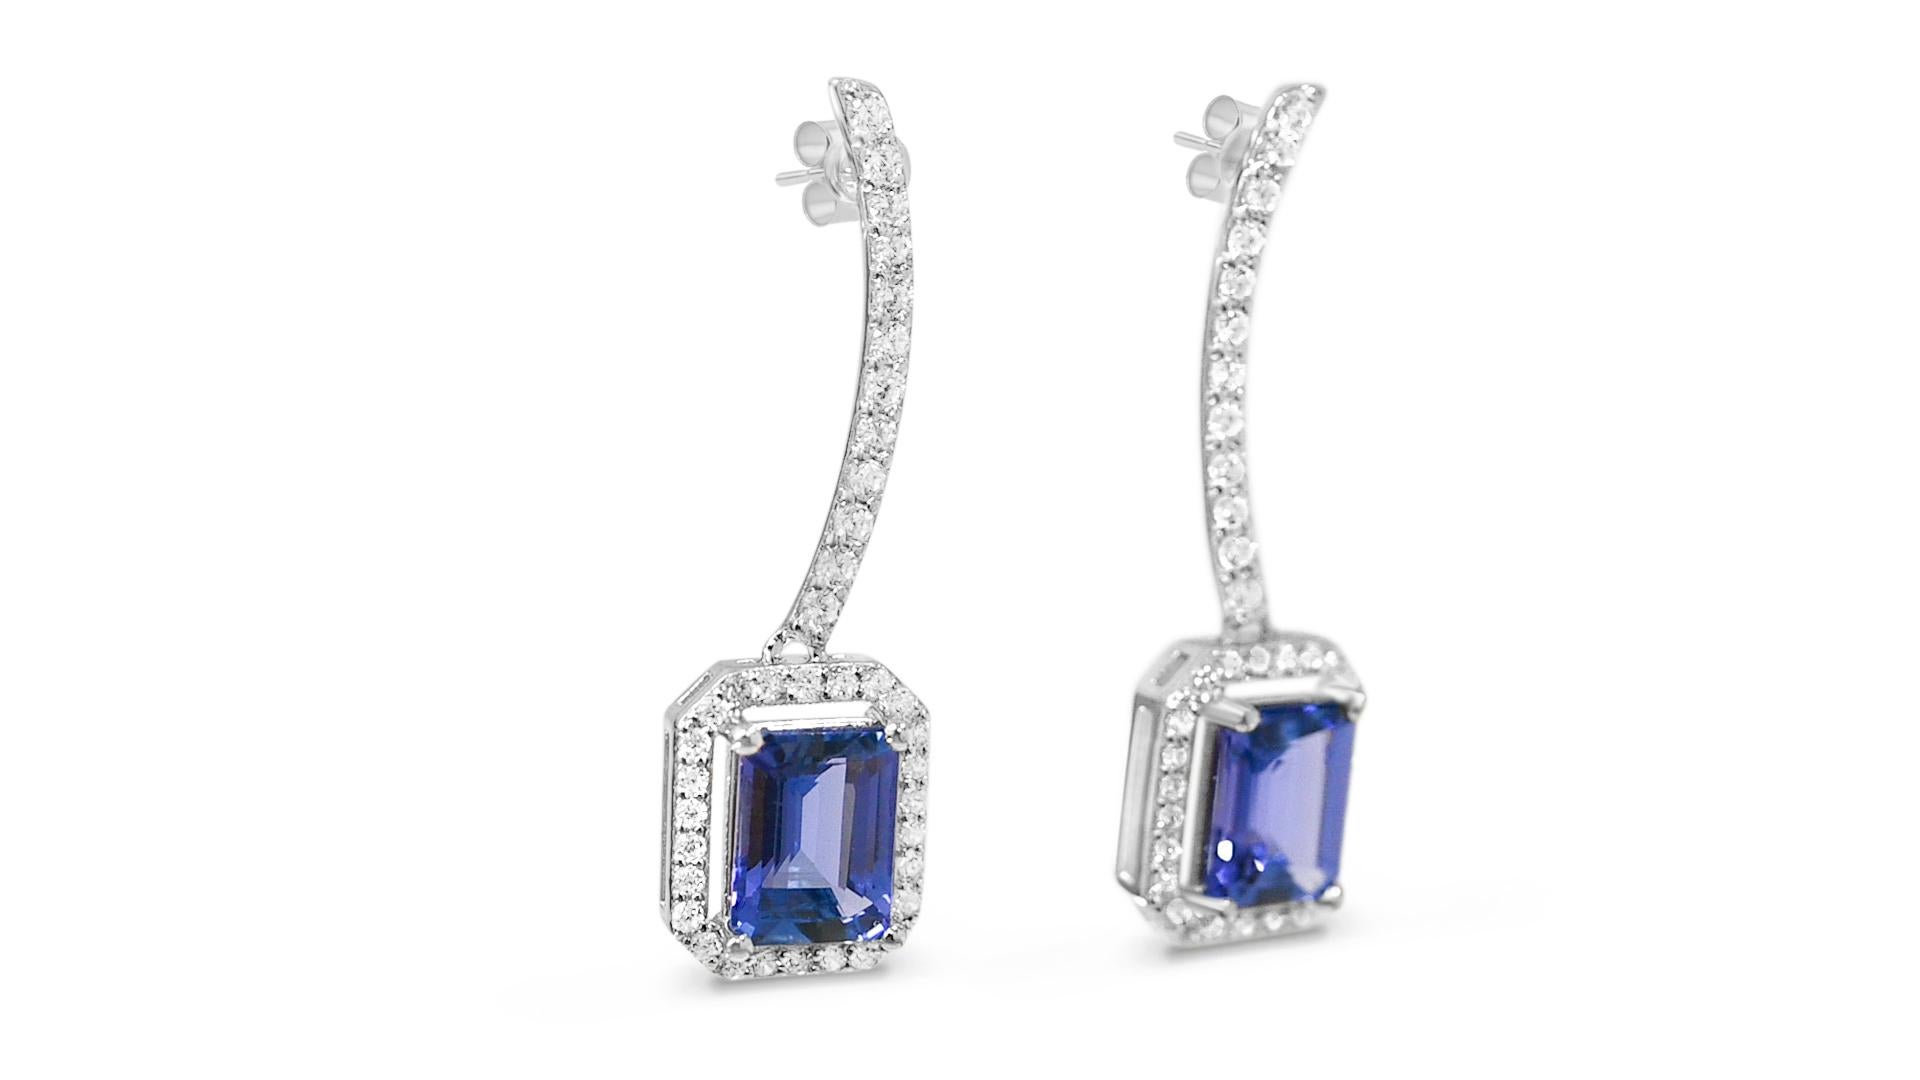 Emerald Cut 3.30 Ctw Tanzanite Drop Dangle Earring For Women 925 Sterling Silver Jewelry  For Sale